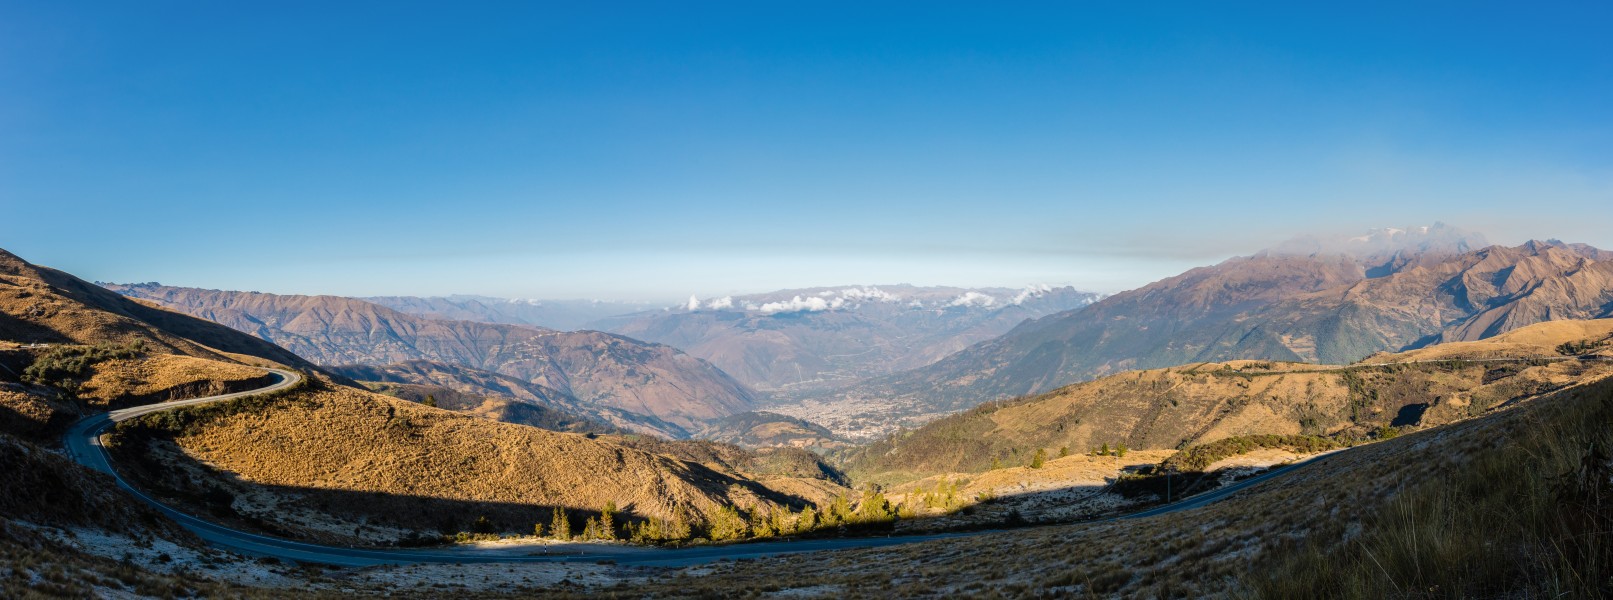 Vista de los Andes, Abancay, Perú, 2015-07-30, DD 69-71 PAN